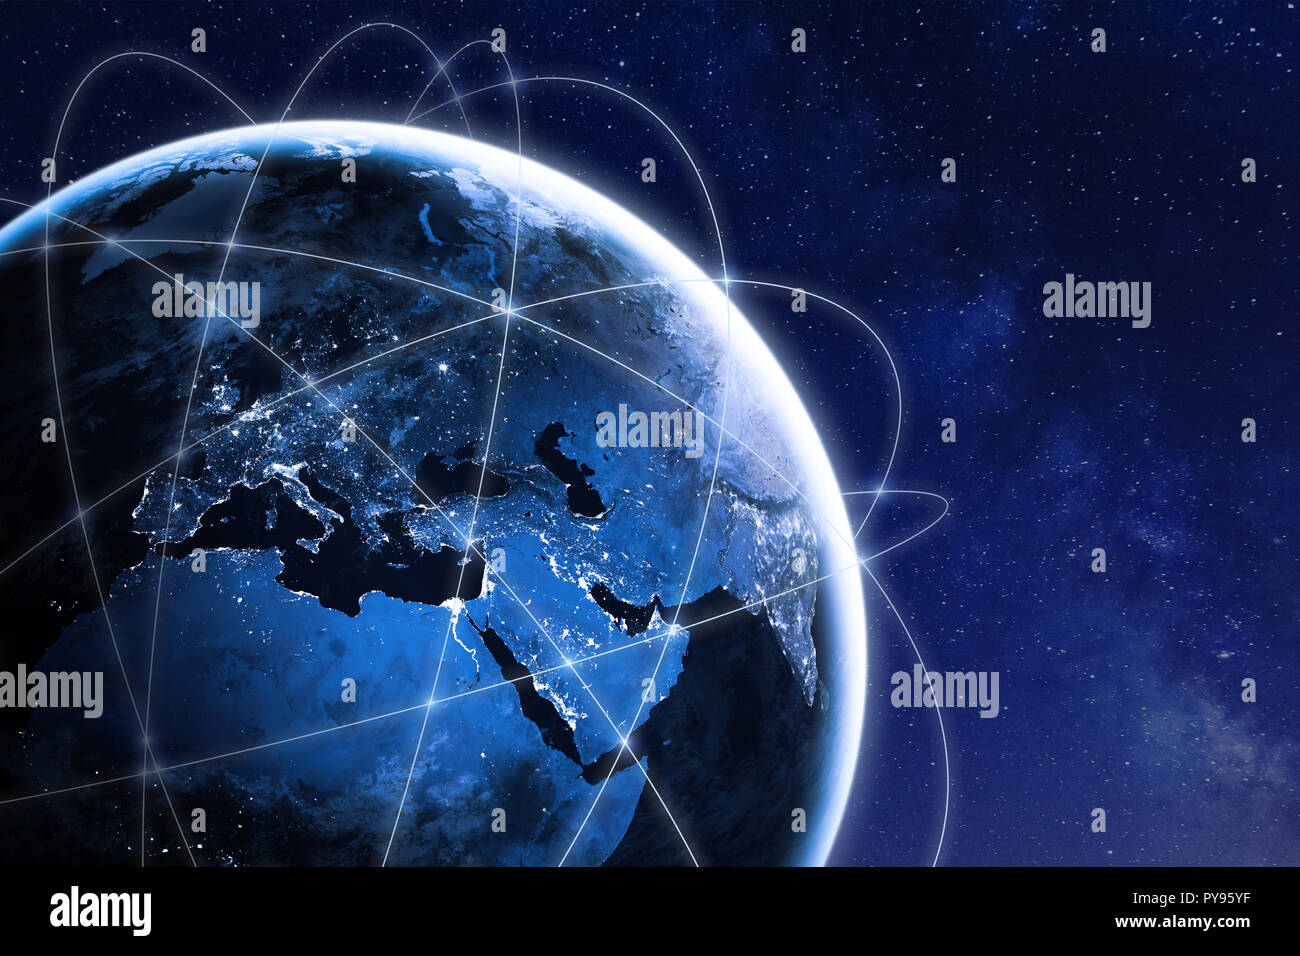 Concept de la connectivité mondiale dans le monde entier avec des lignes de connexion réseau de communication autour de la planète Terre vue de l'espace, de l'orbite des satellites, les lumières de la ville Banque D'Images